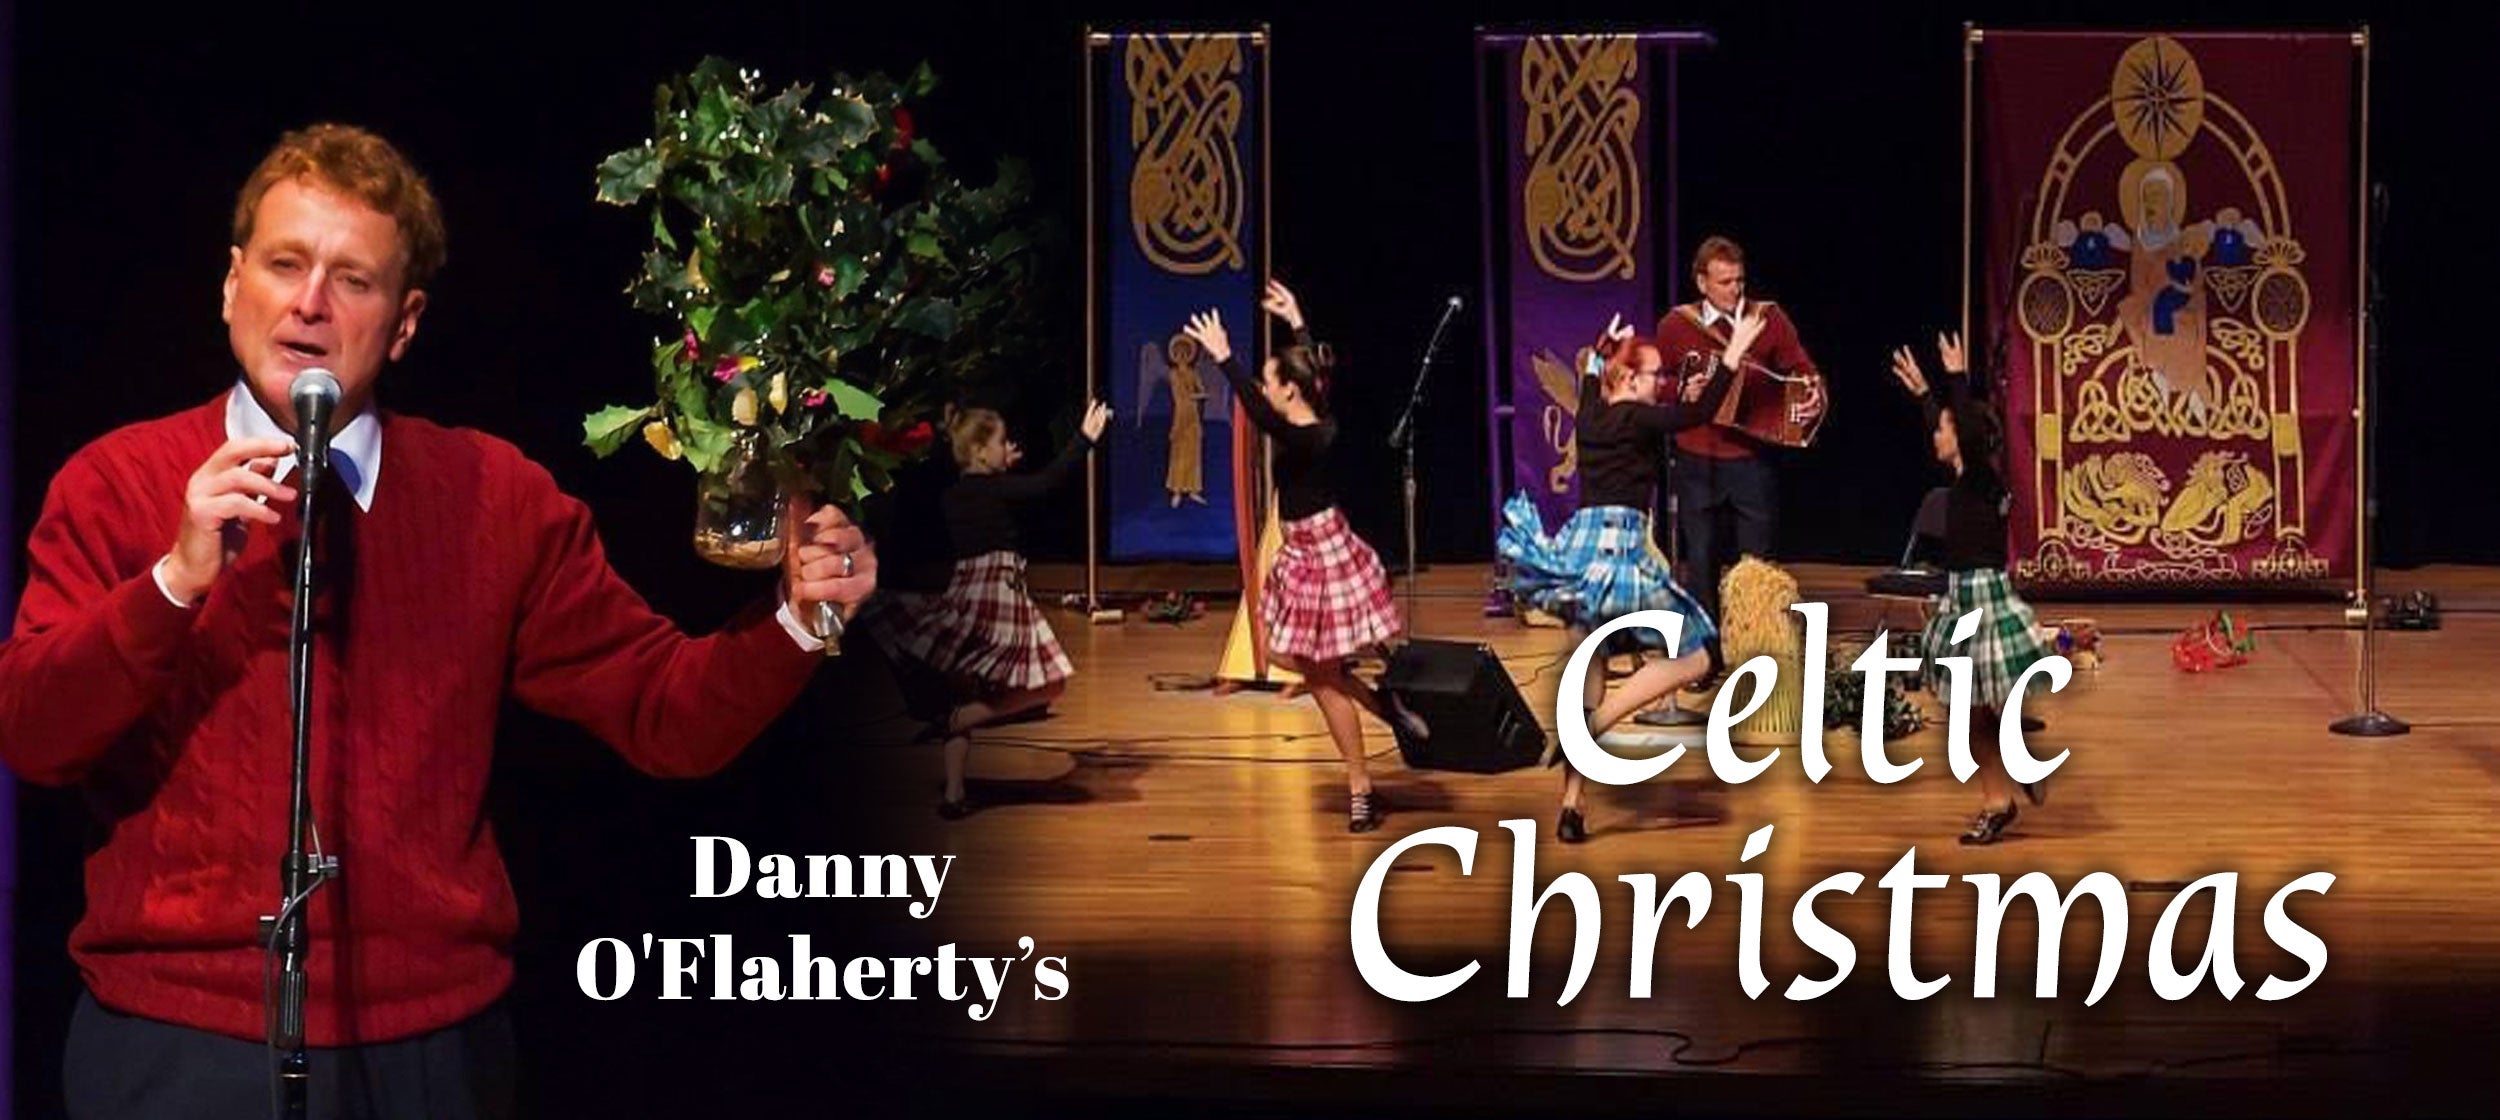  Danny O'Flaherty's Celtic Christmas